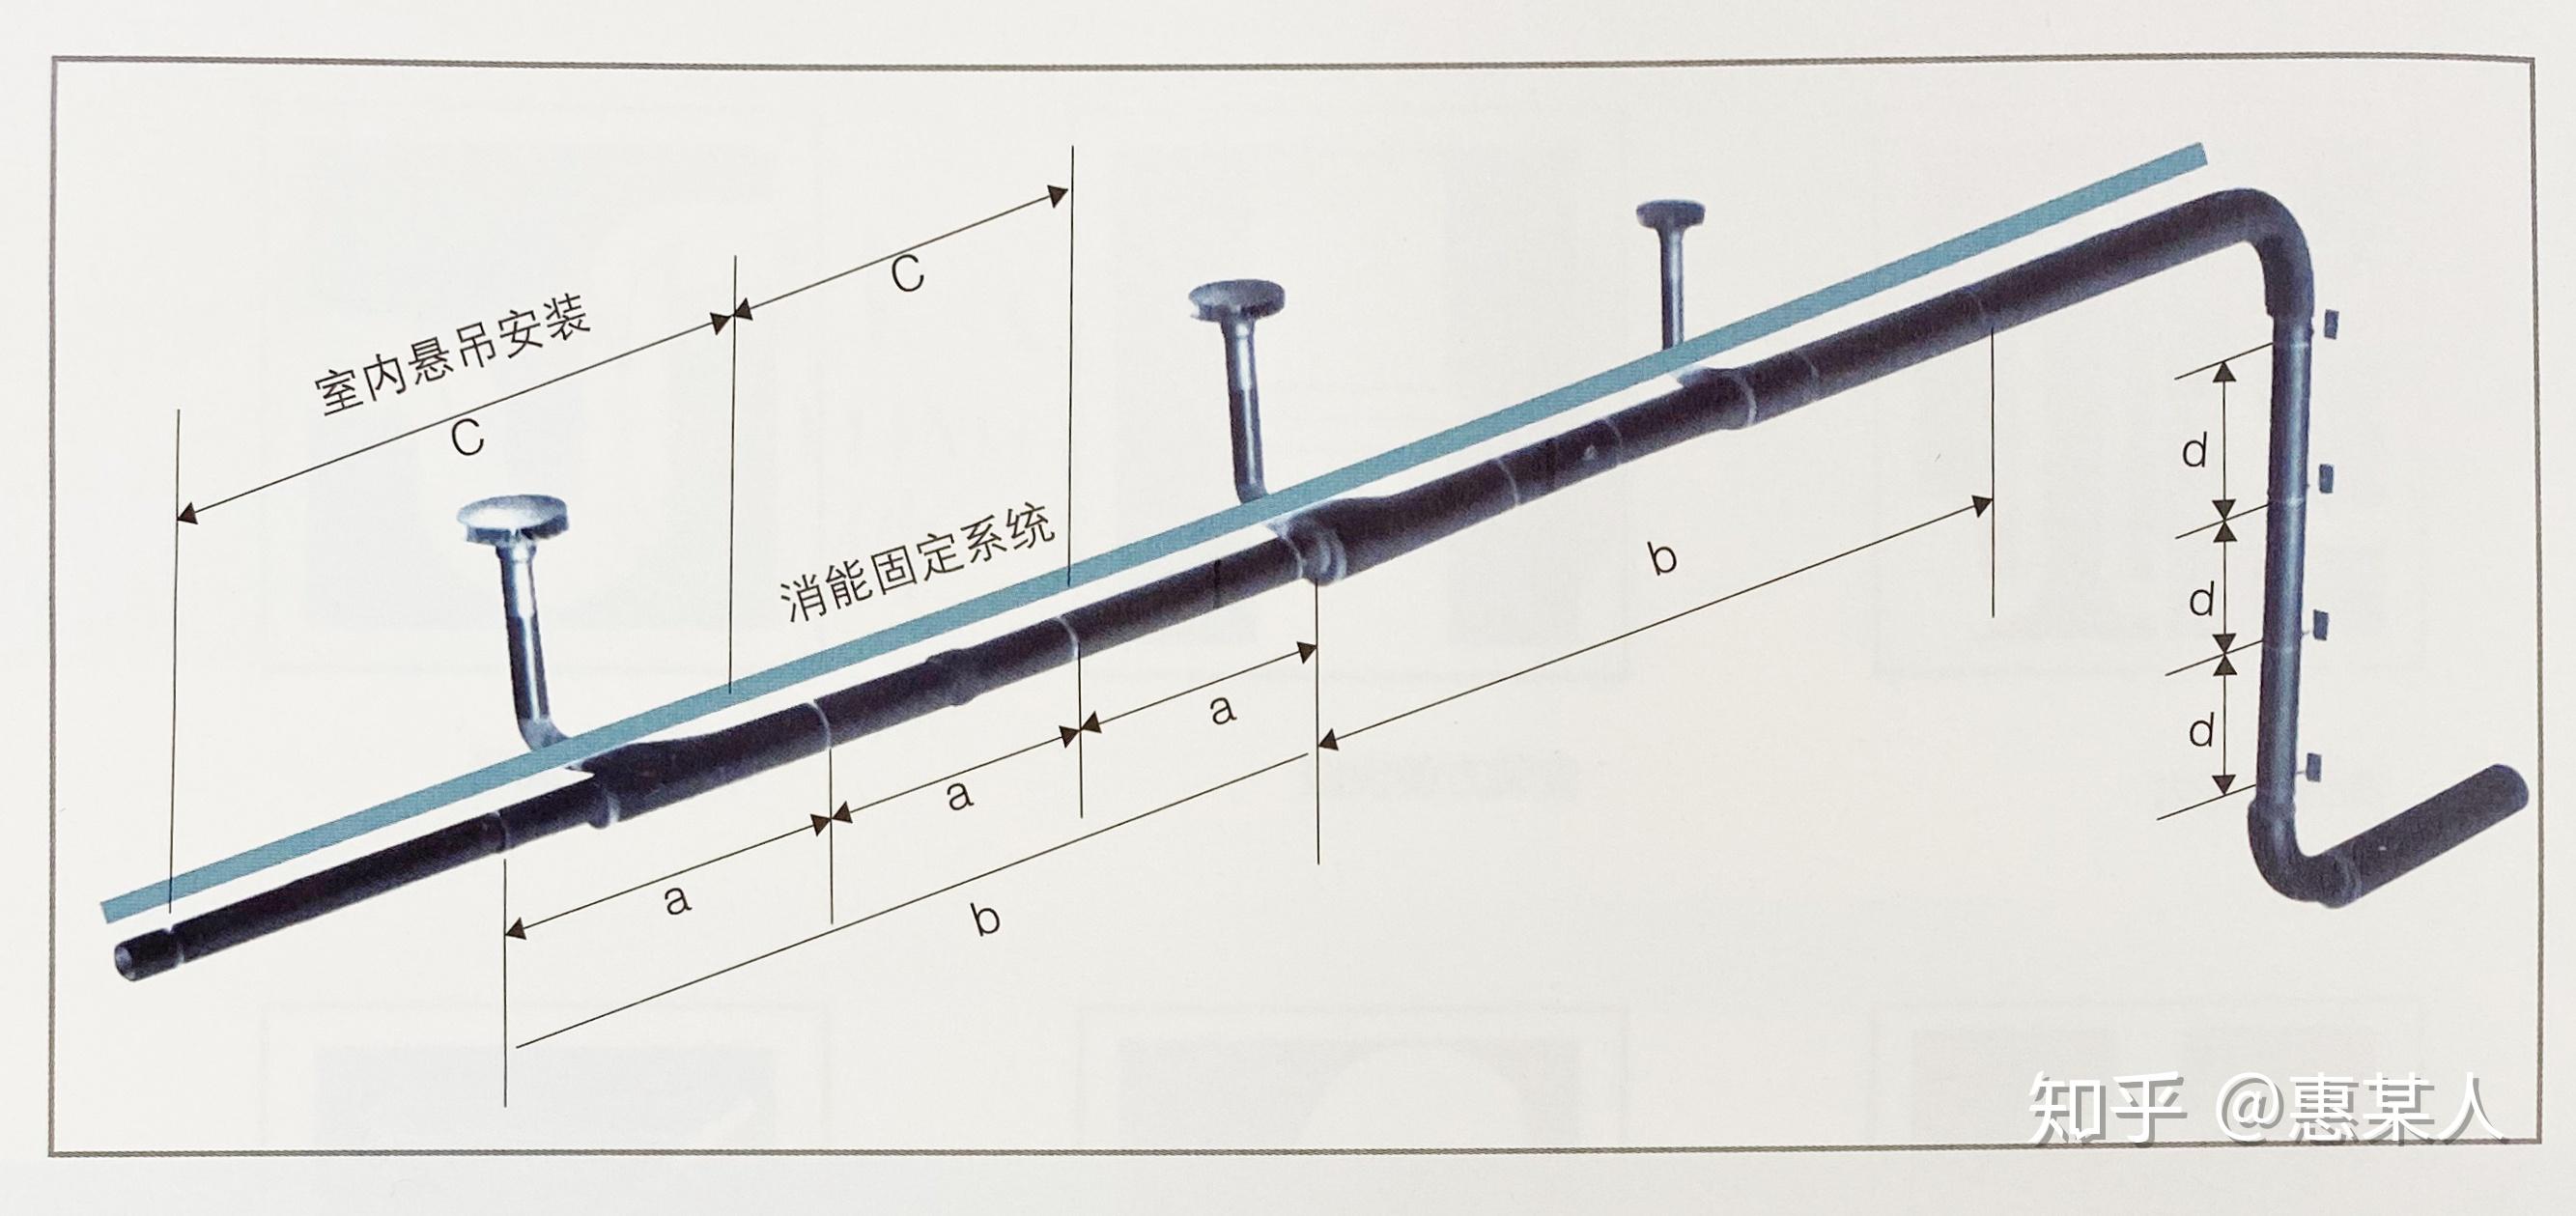 管道固定装置管道坚固系统固定系统虽然是虹吸雨水排放系统的辅助部分